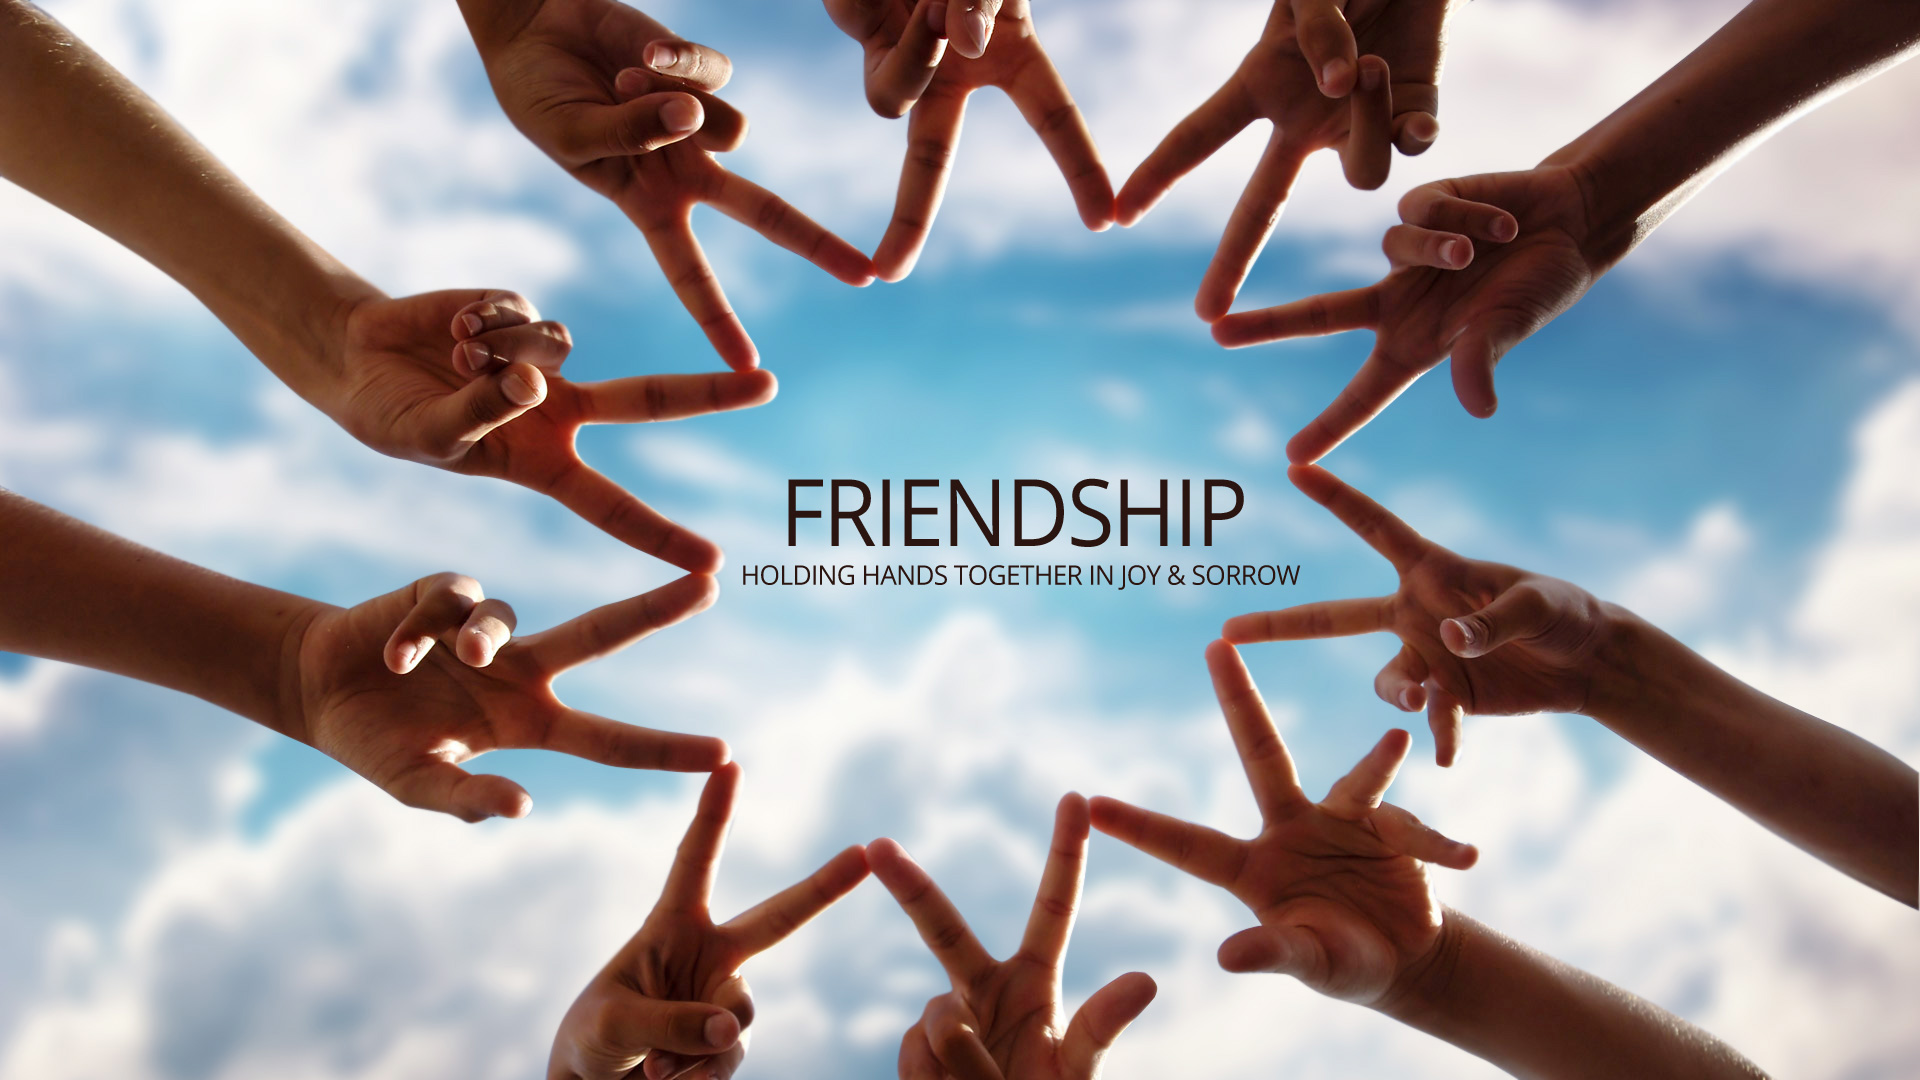 fonds d'écran de logo d'amitié,relation amicale,équipe,communauté,ciel,geste